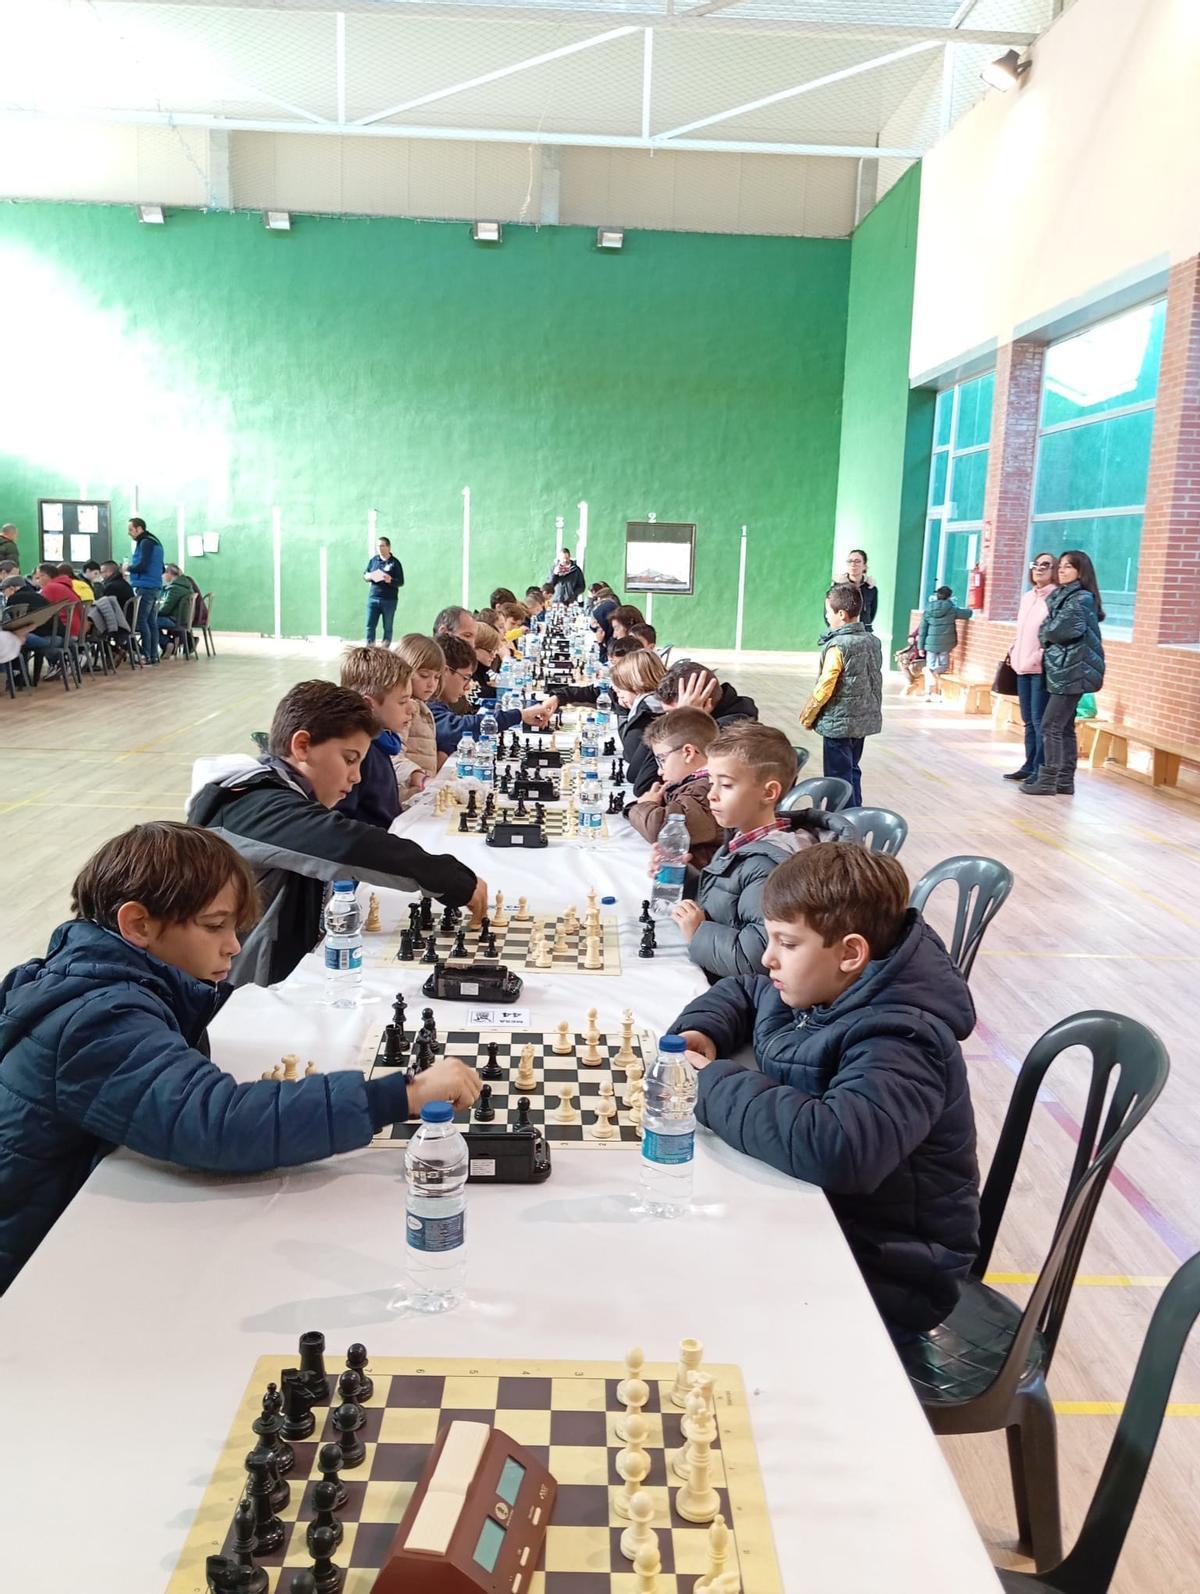 Participantes jugando durante el torneo de ajedrez de l'Alcúdia de Crespins.